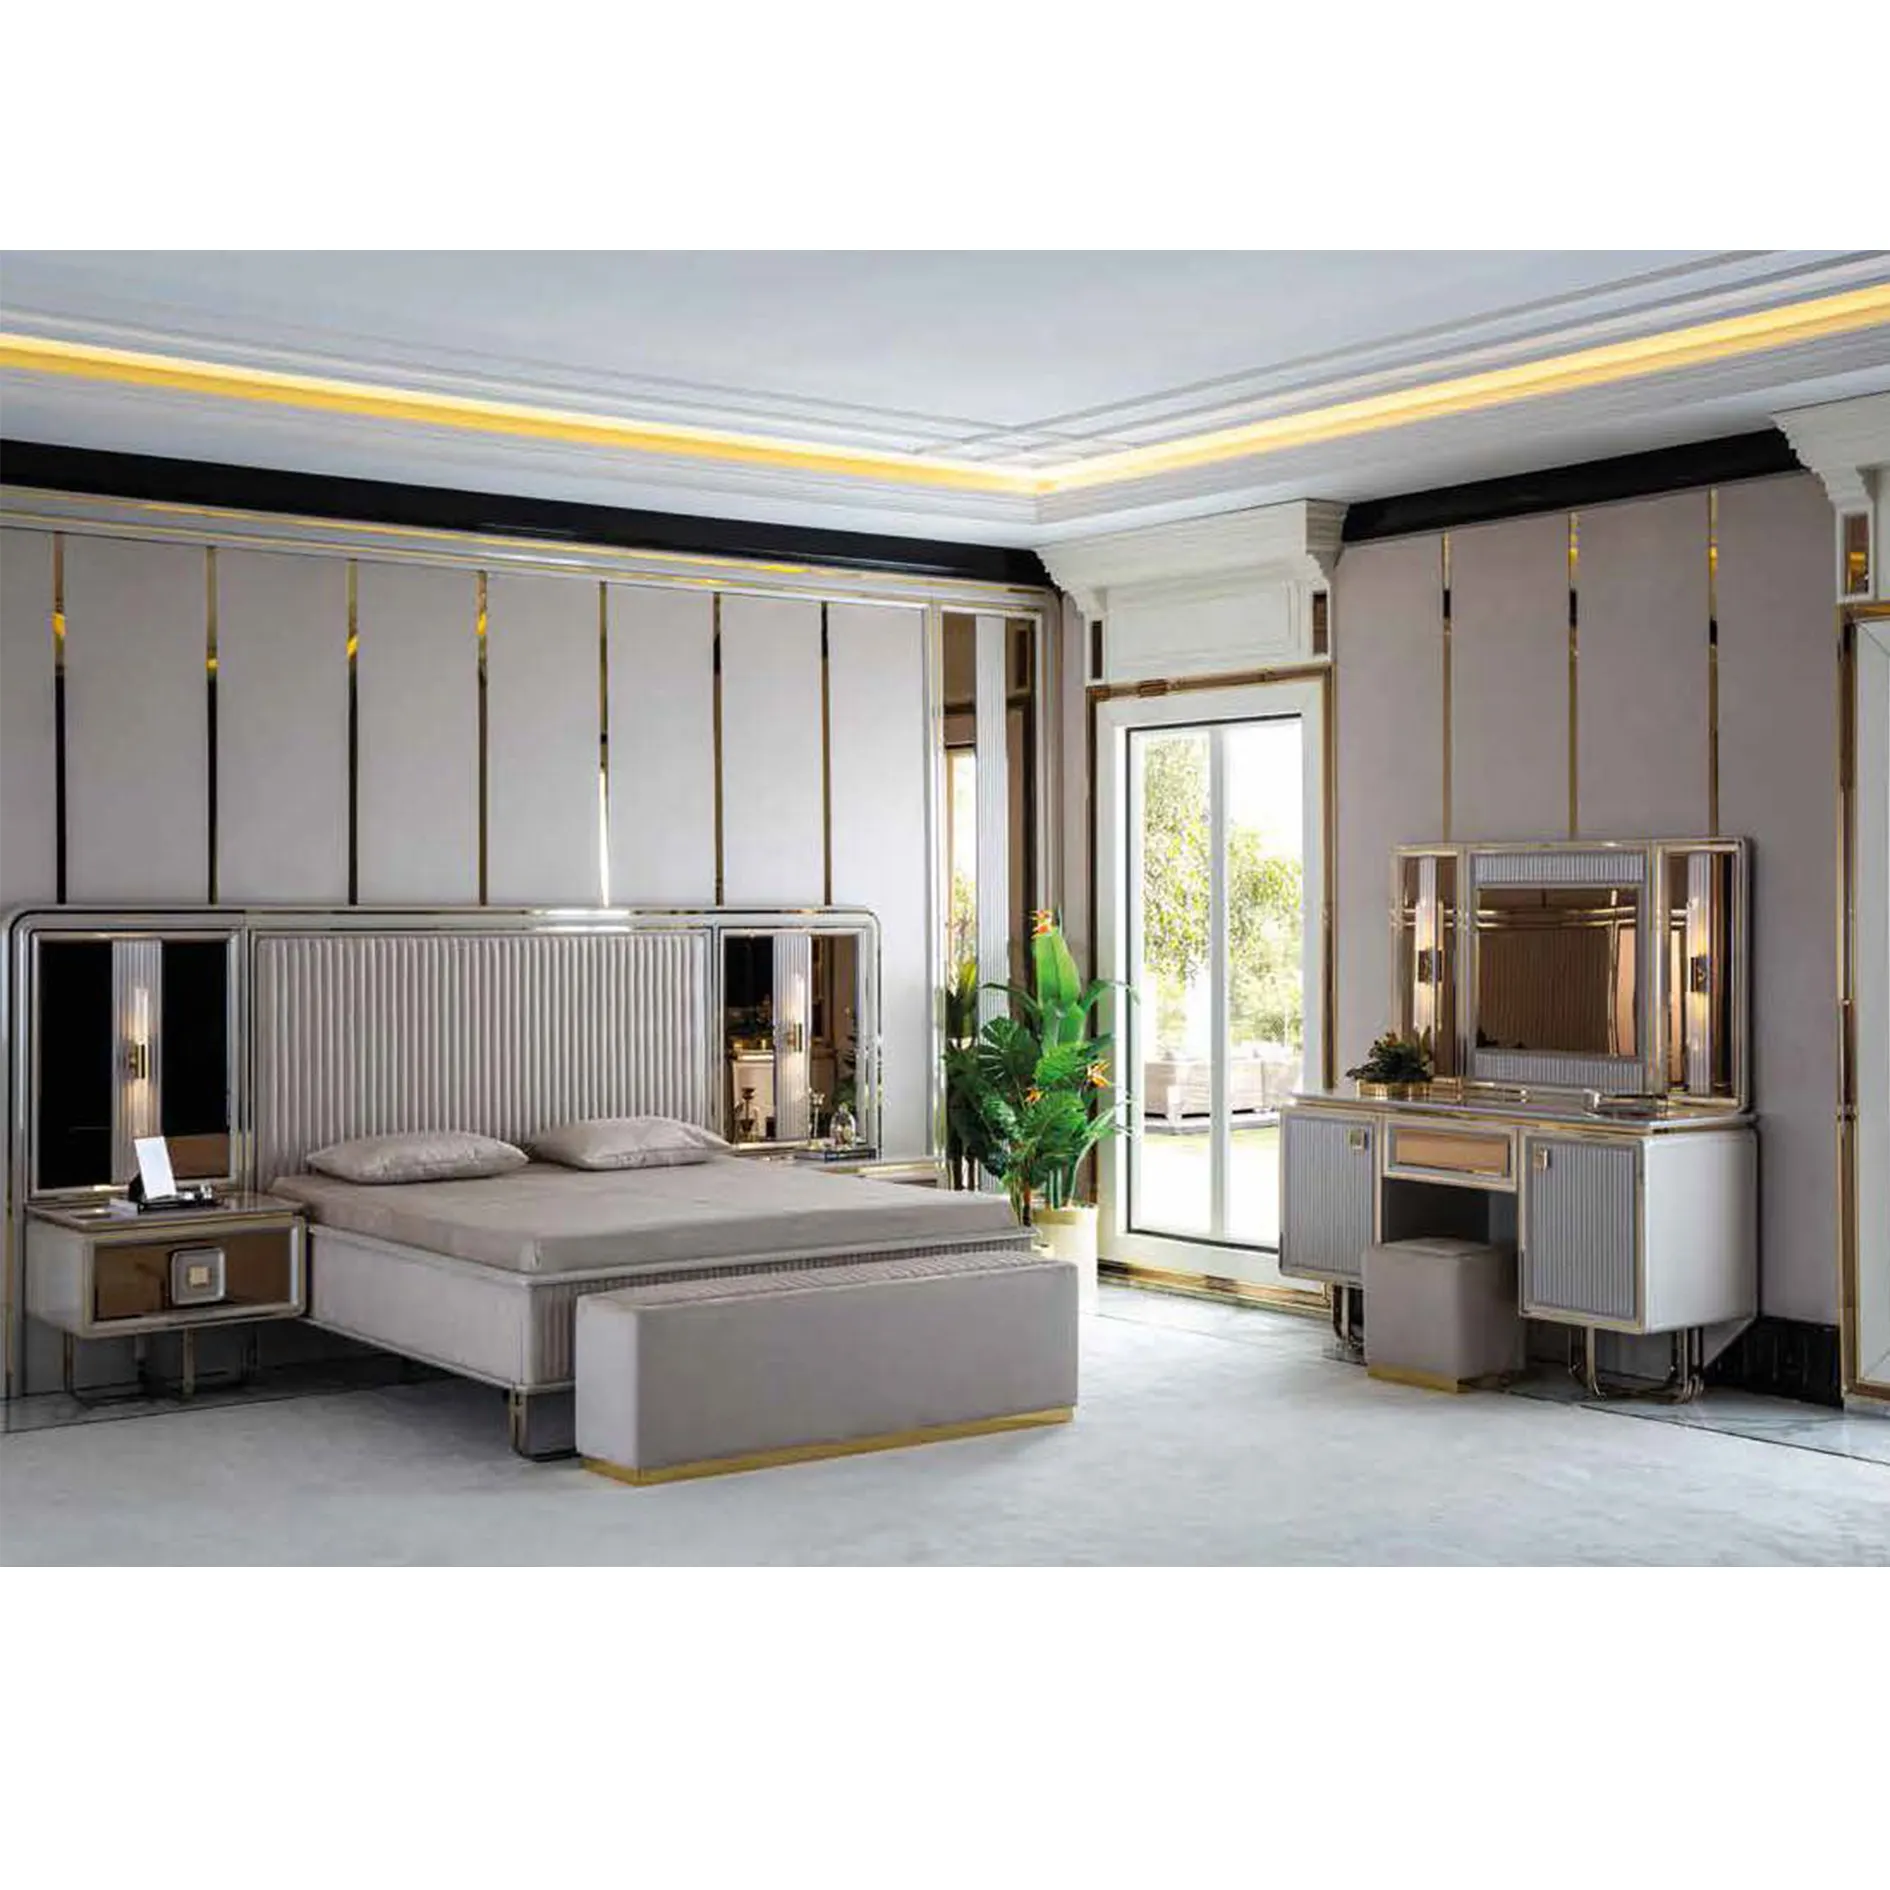 Lüks yatak odası mobilya Set fonksiyonel gardırop lüks parlak ev mobilya türkiye türk mobilya kral boyutu olabilir